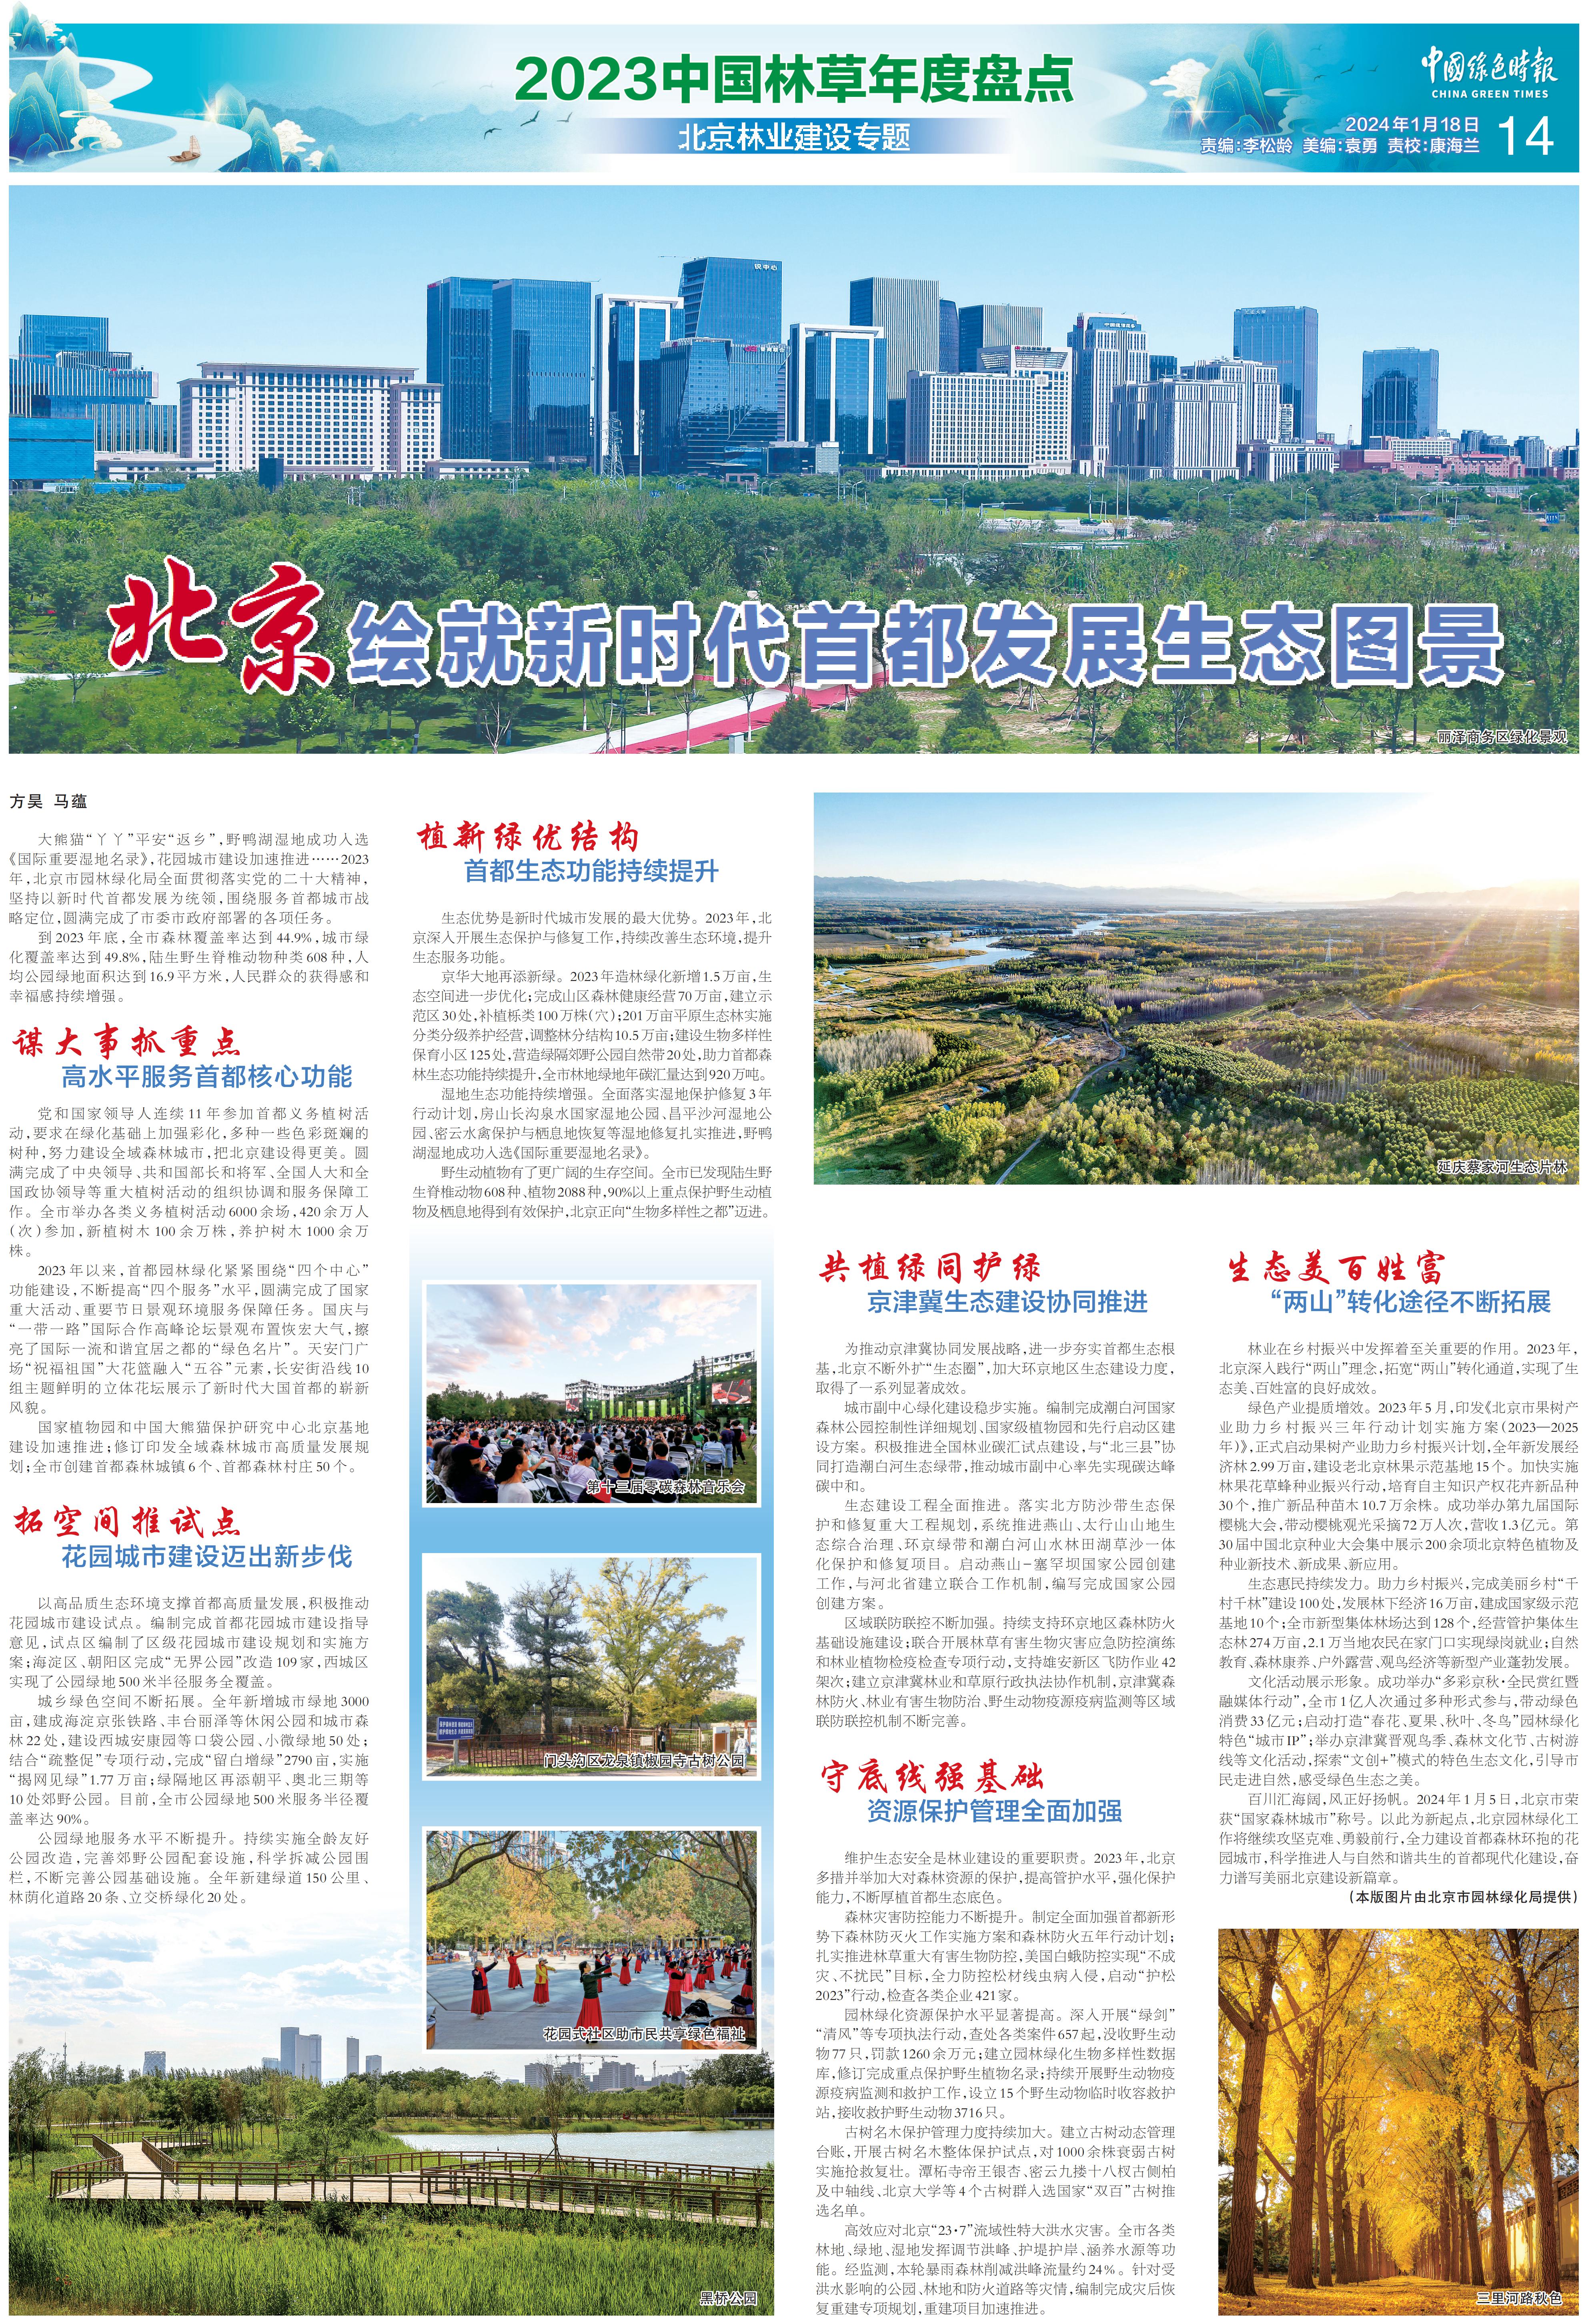 0118中国绿色时报-北京：绘就新时代首都发展生态图景_00.jpg